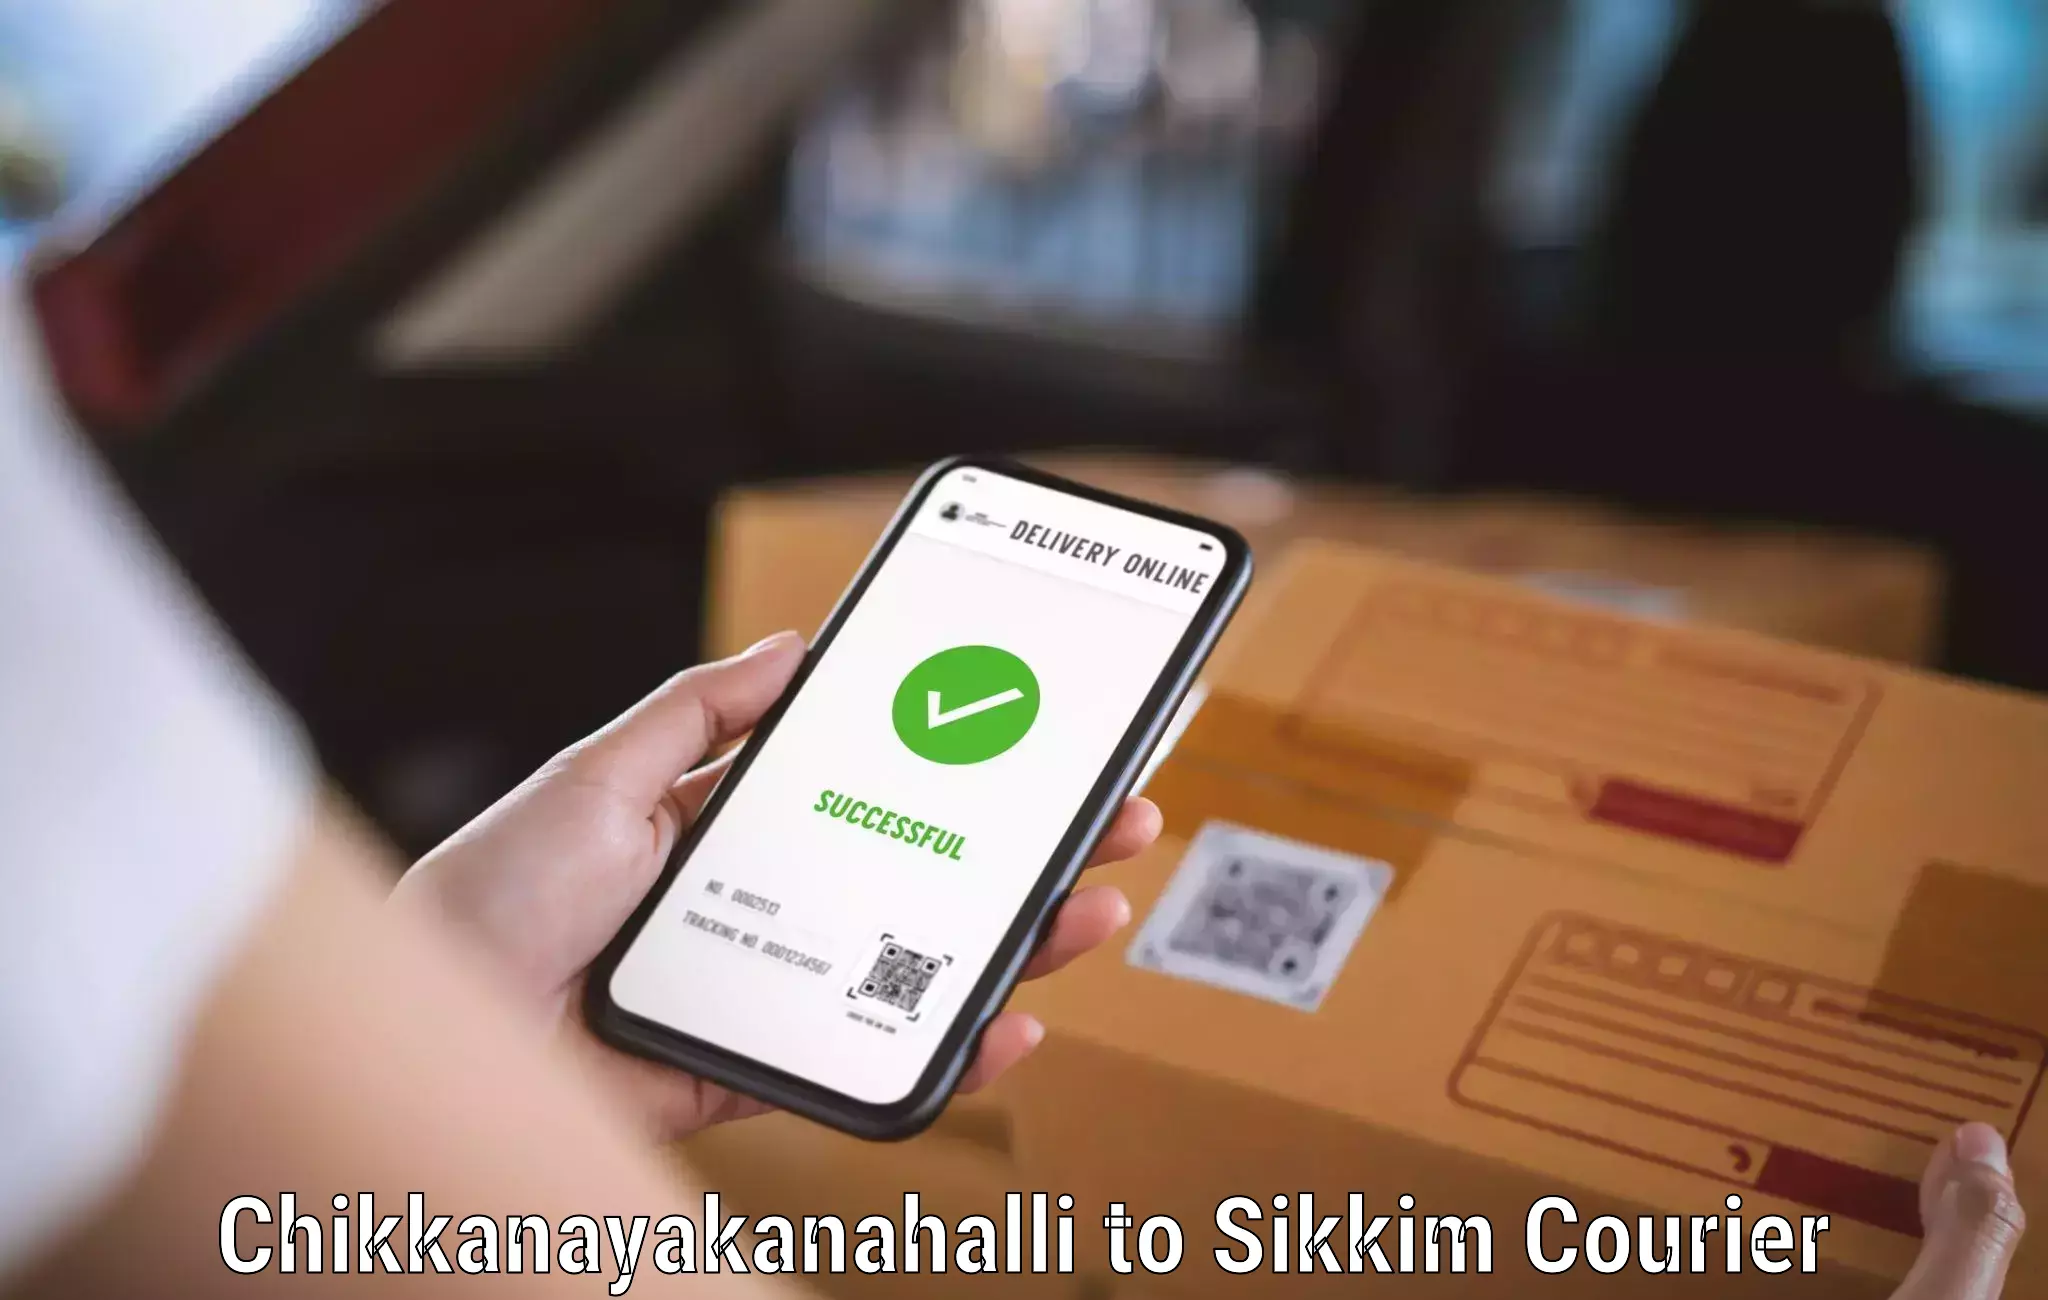 Cost-effective courier solutions Chikkanayakanahalli to North Sikkim